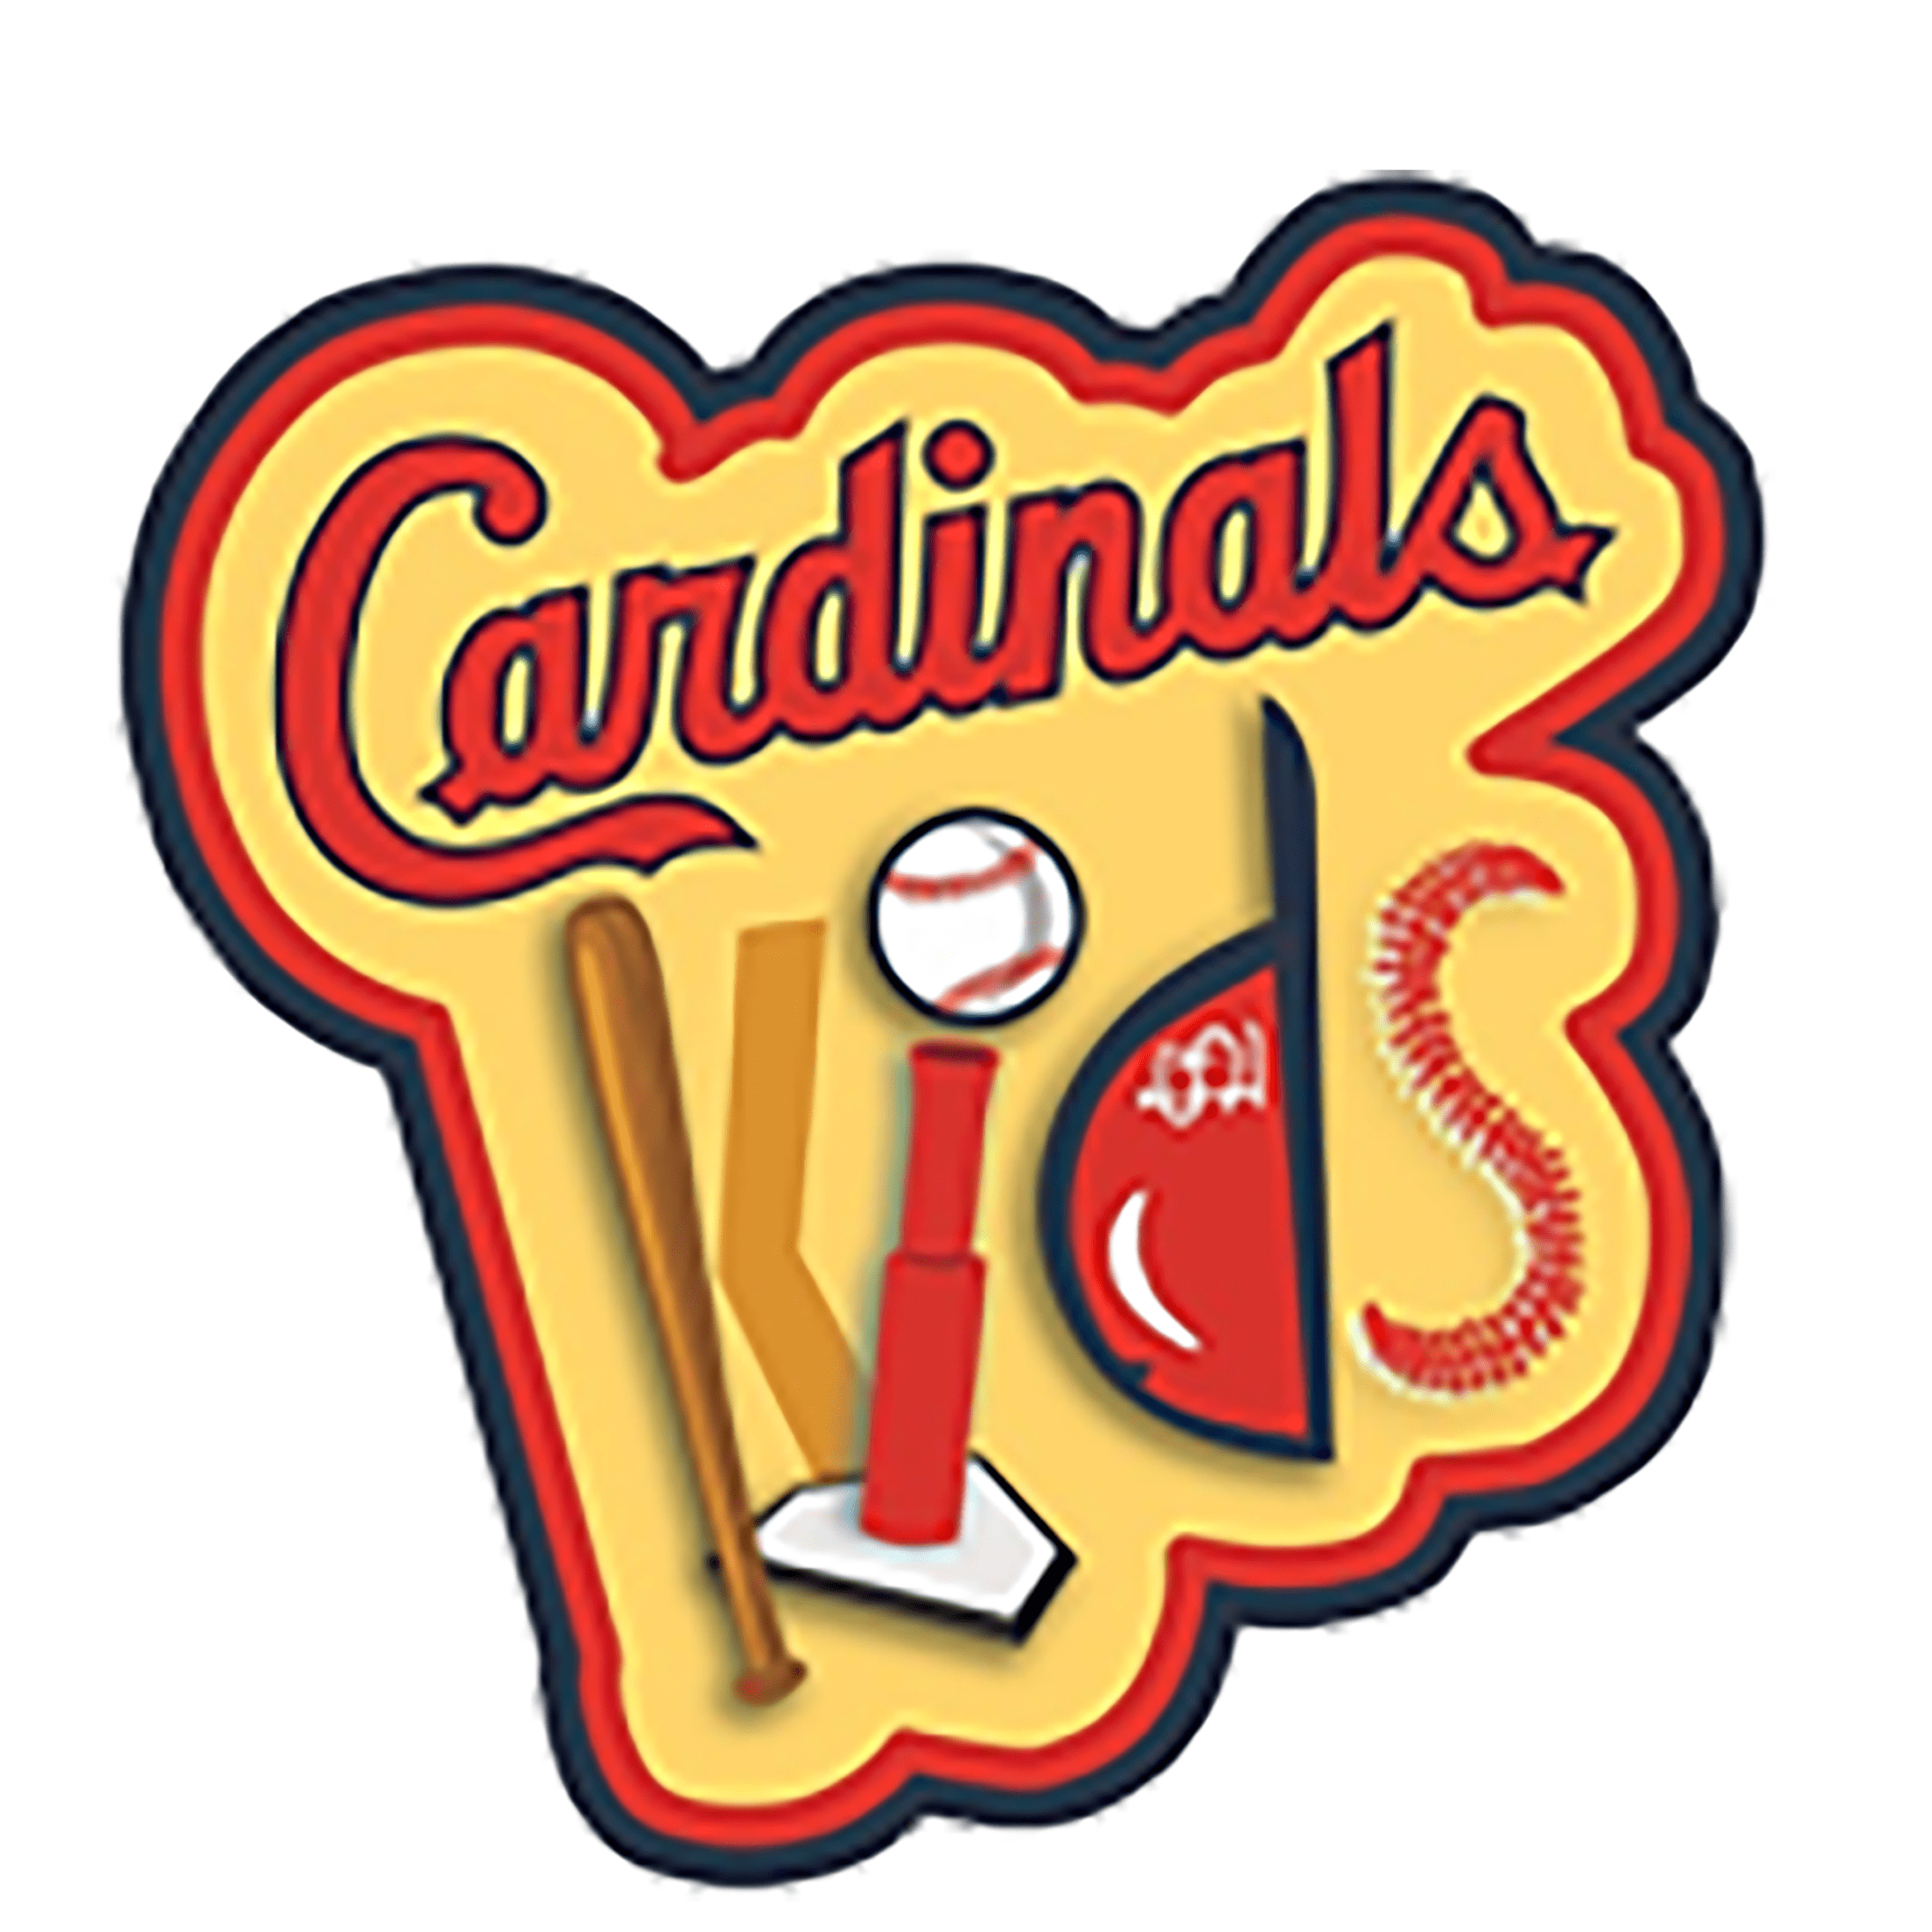 Cardinals Kids TV Show